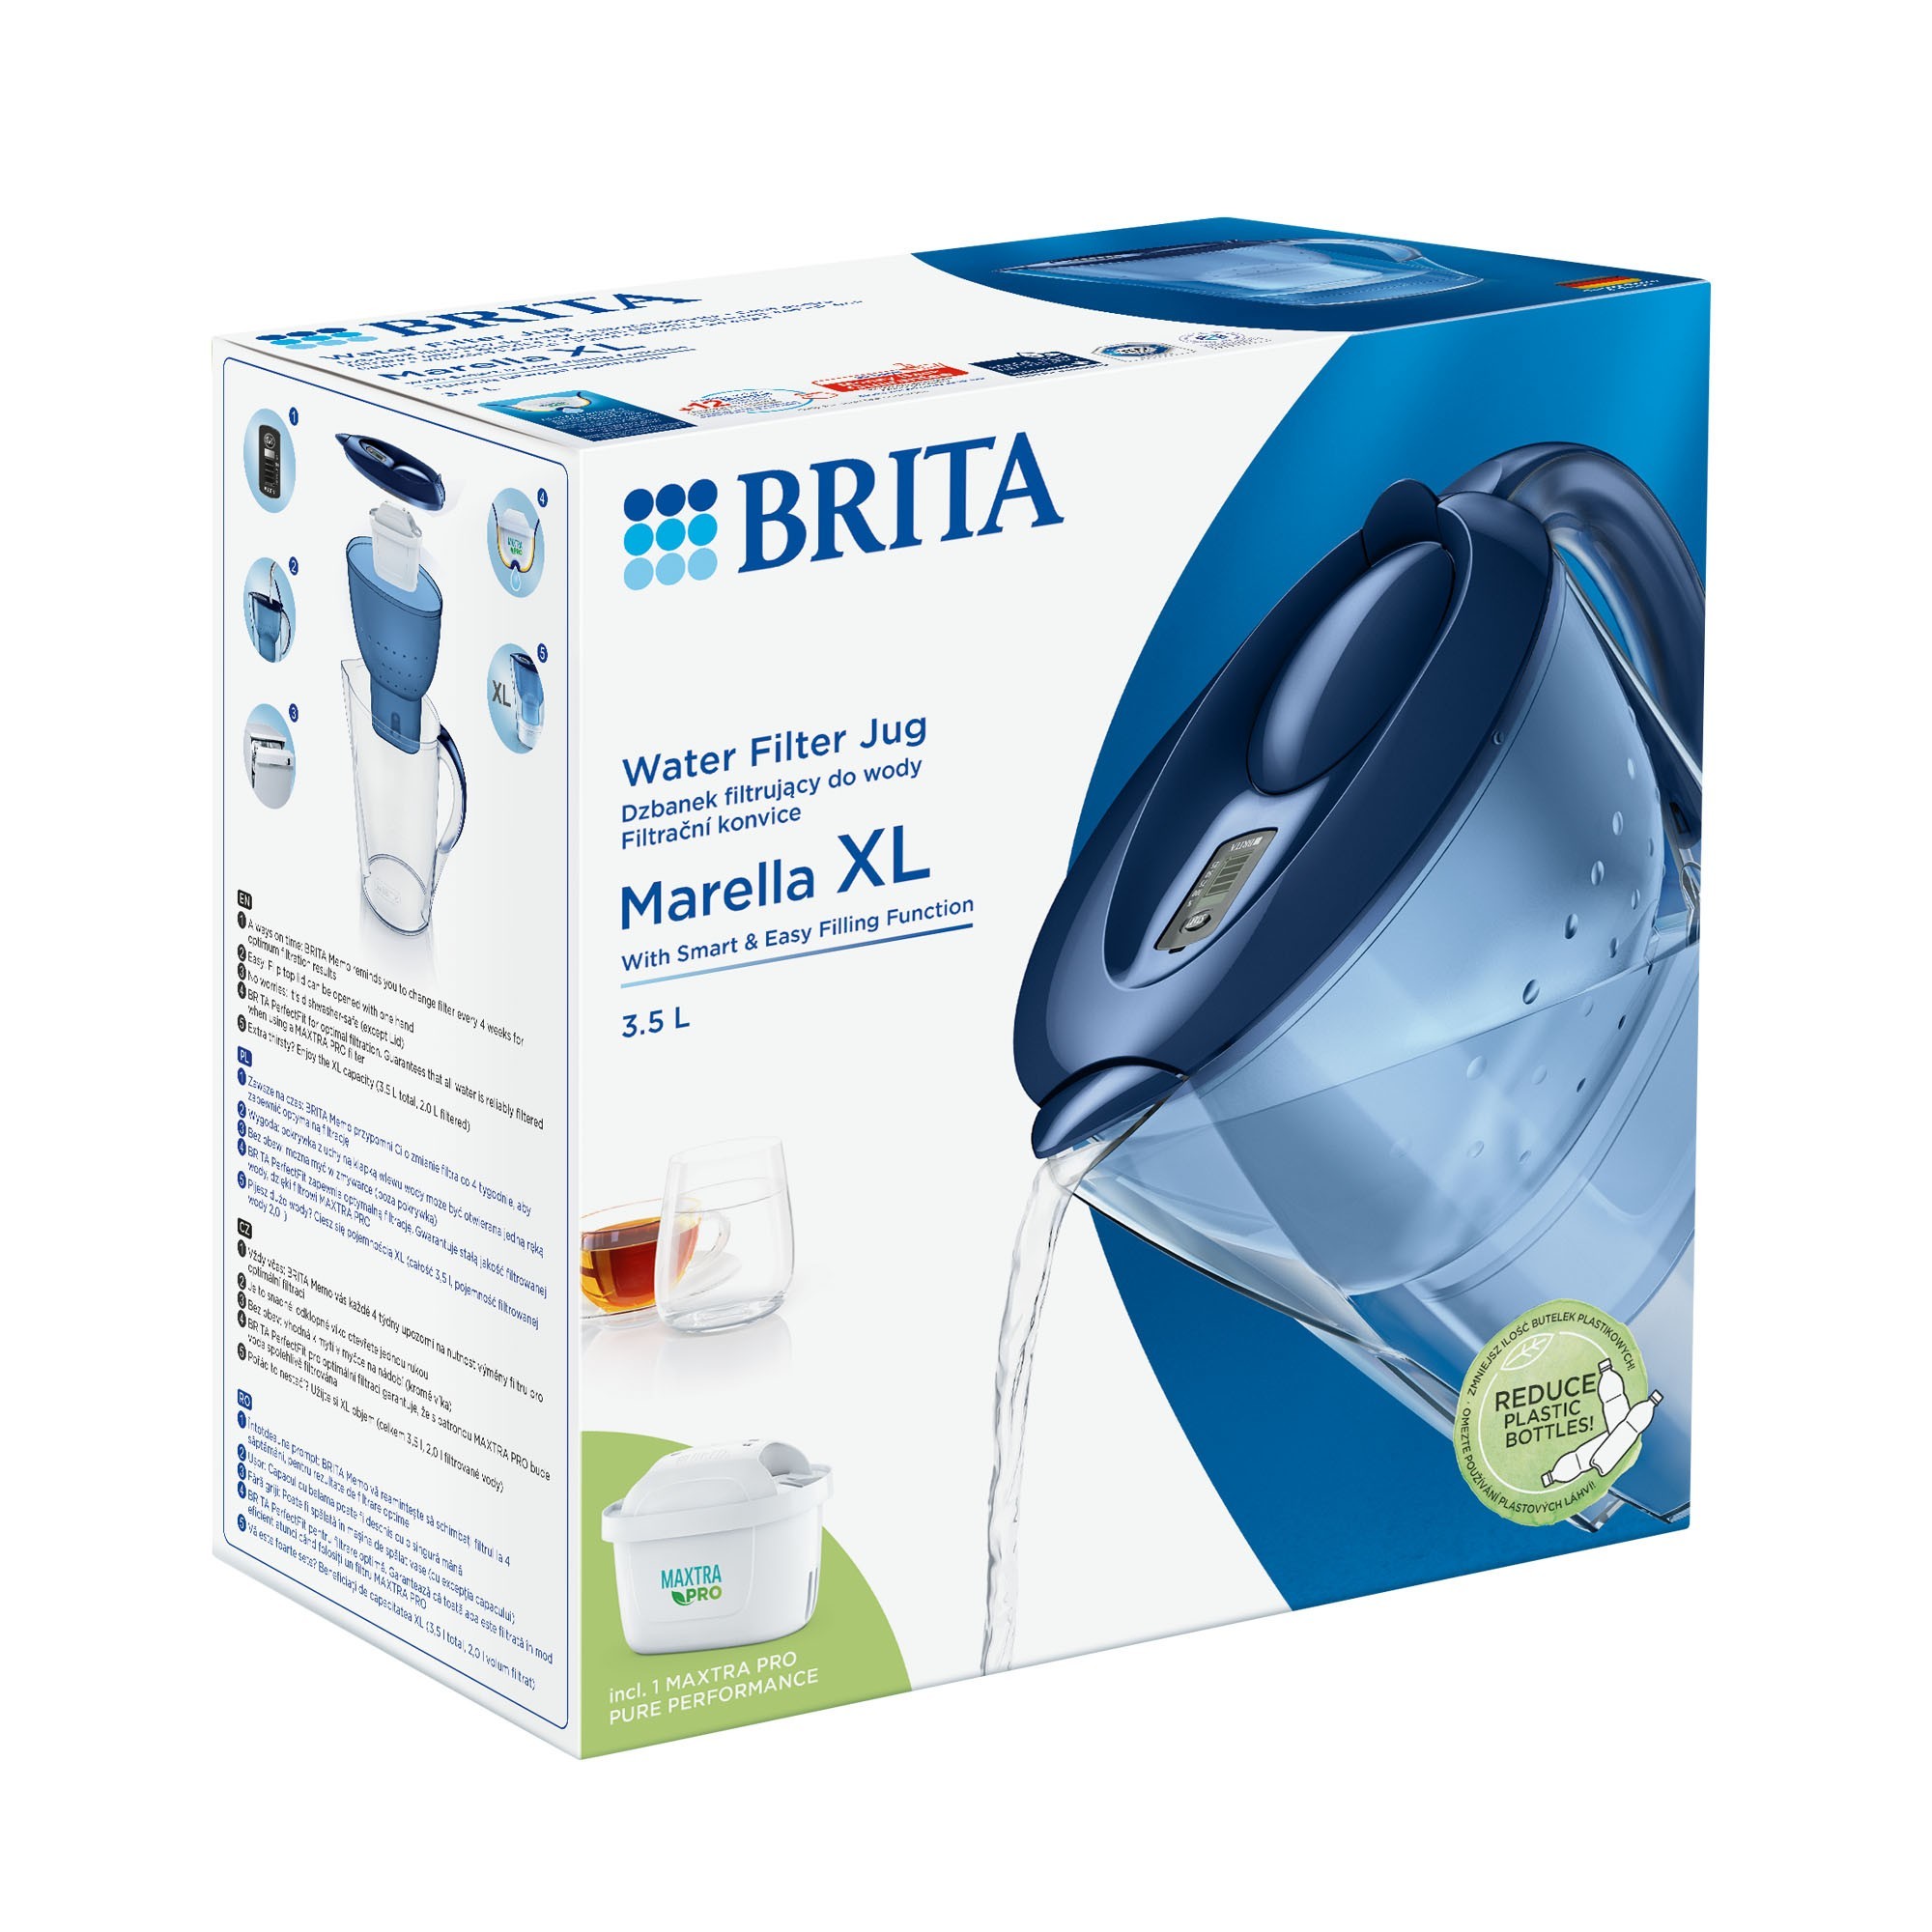 Caraffa filtrante BRITA Marella XL 3,5 L Maxtra PRO (blu).